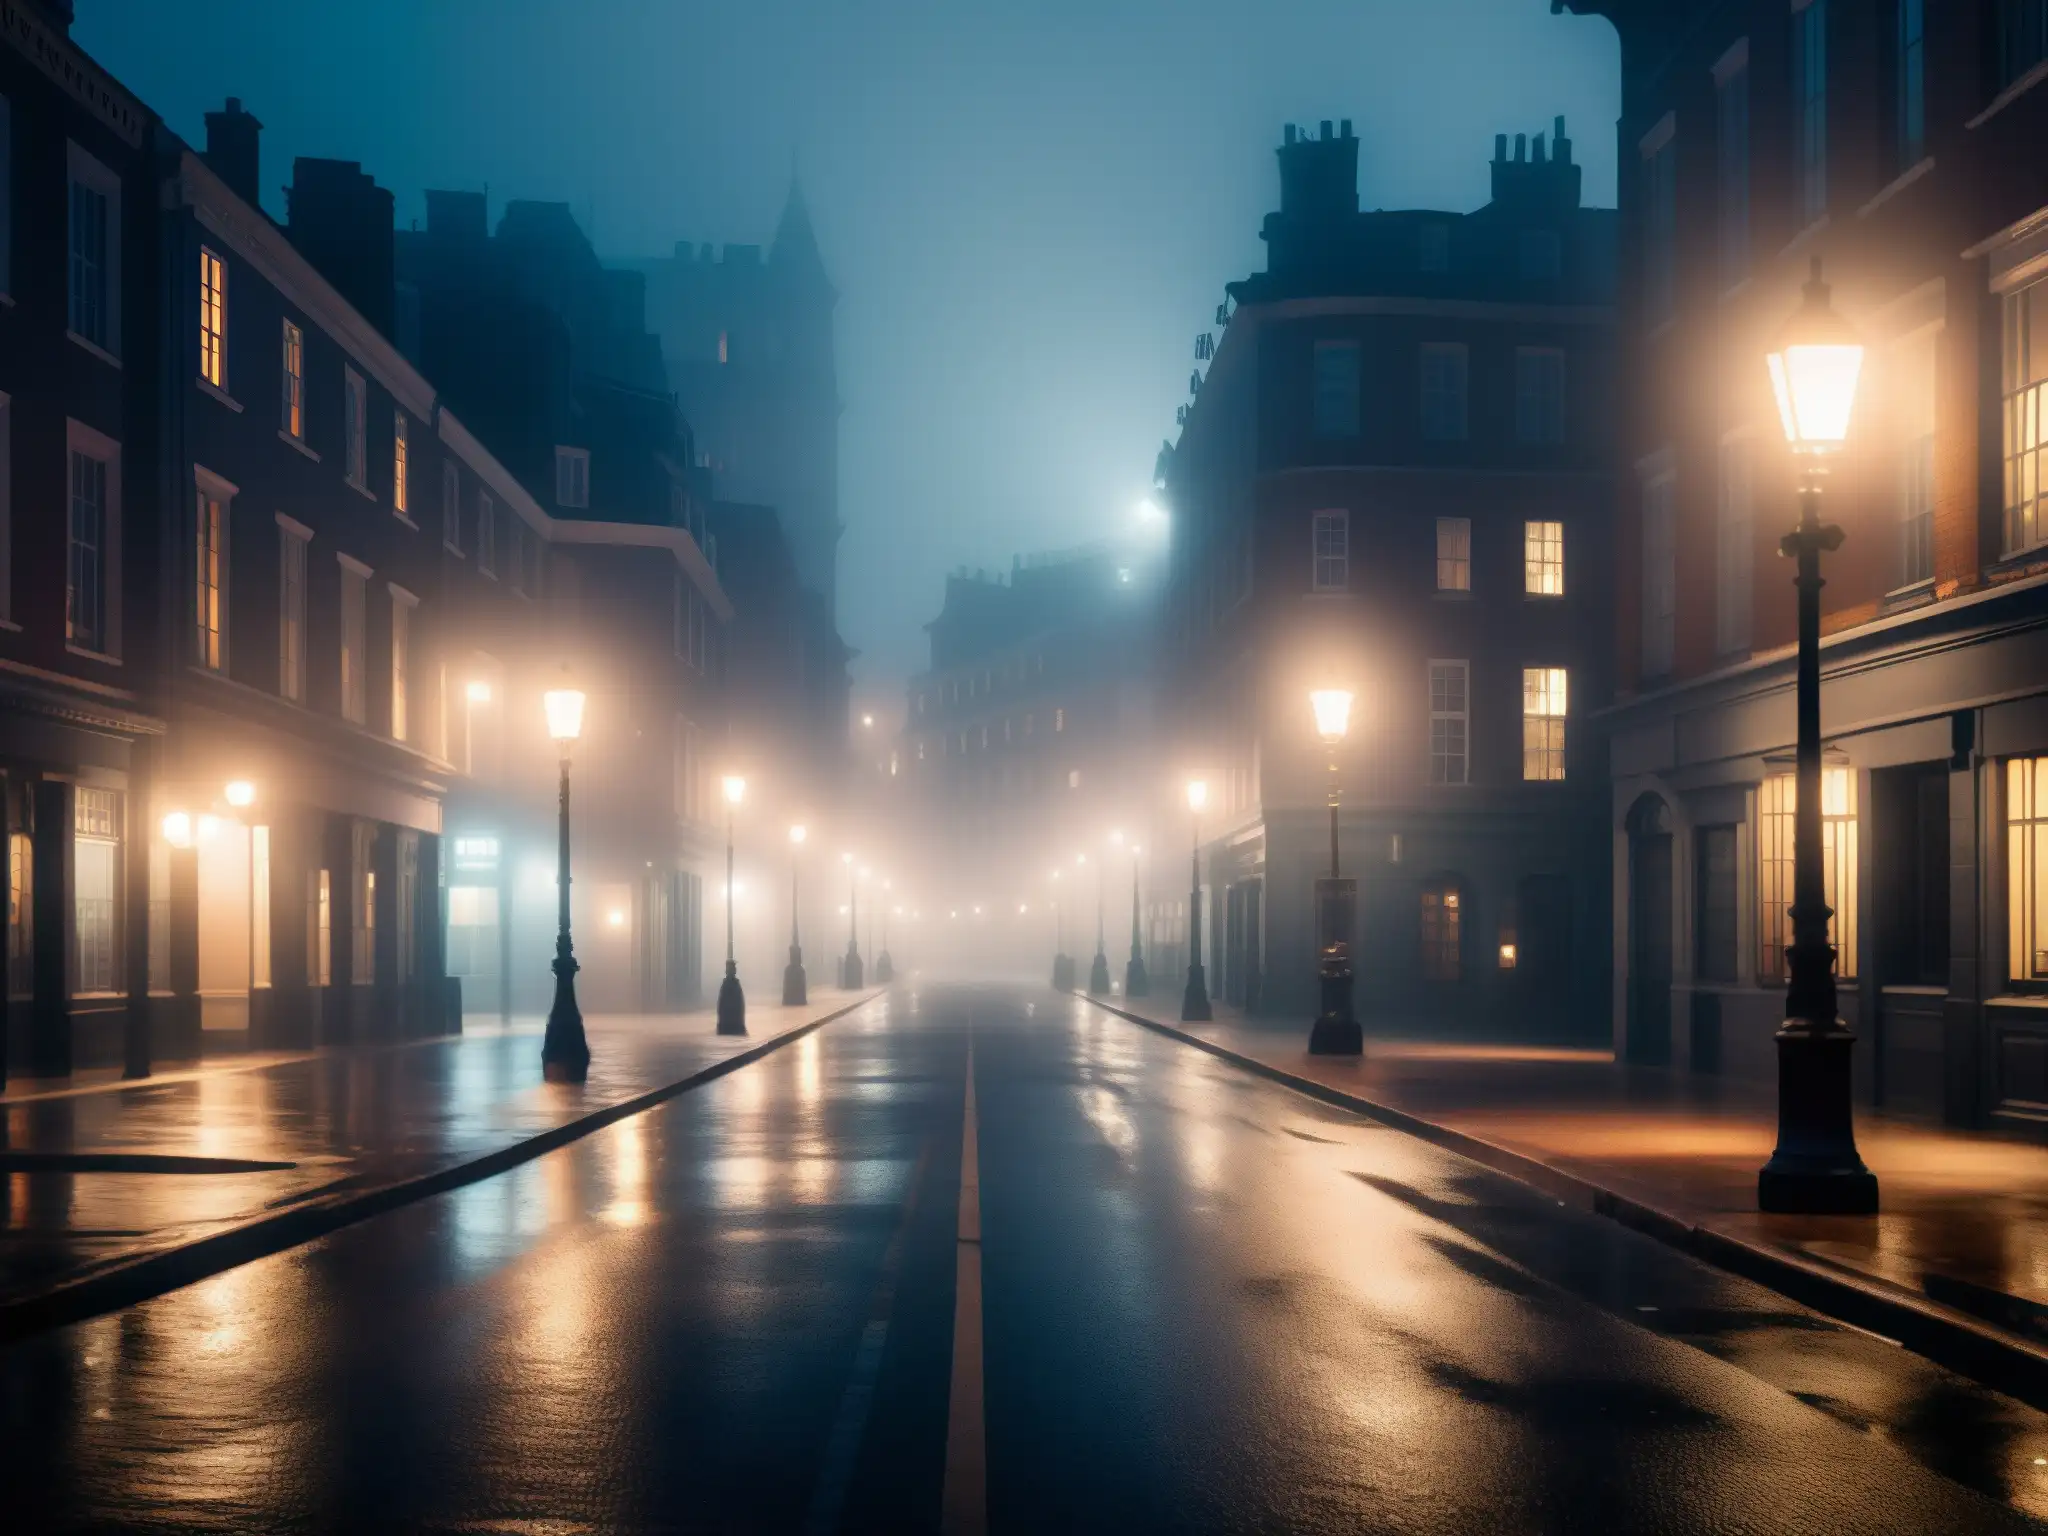 Una calle urbana en penumbra con neblina, evocando el impacto psicológico de leyendas urbanas